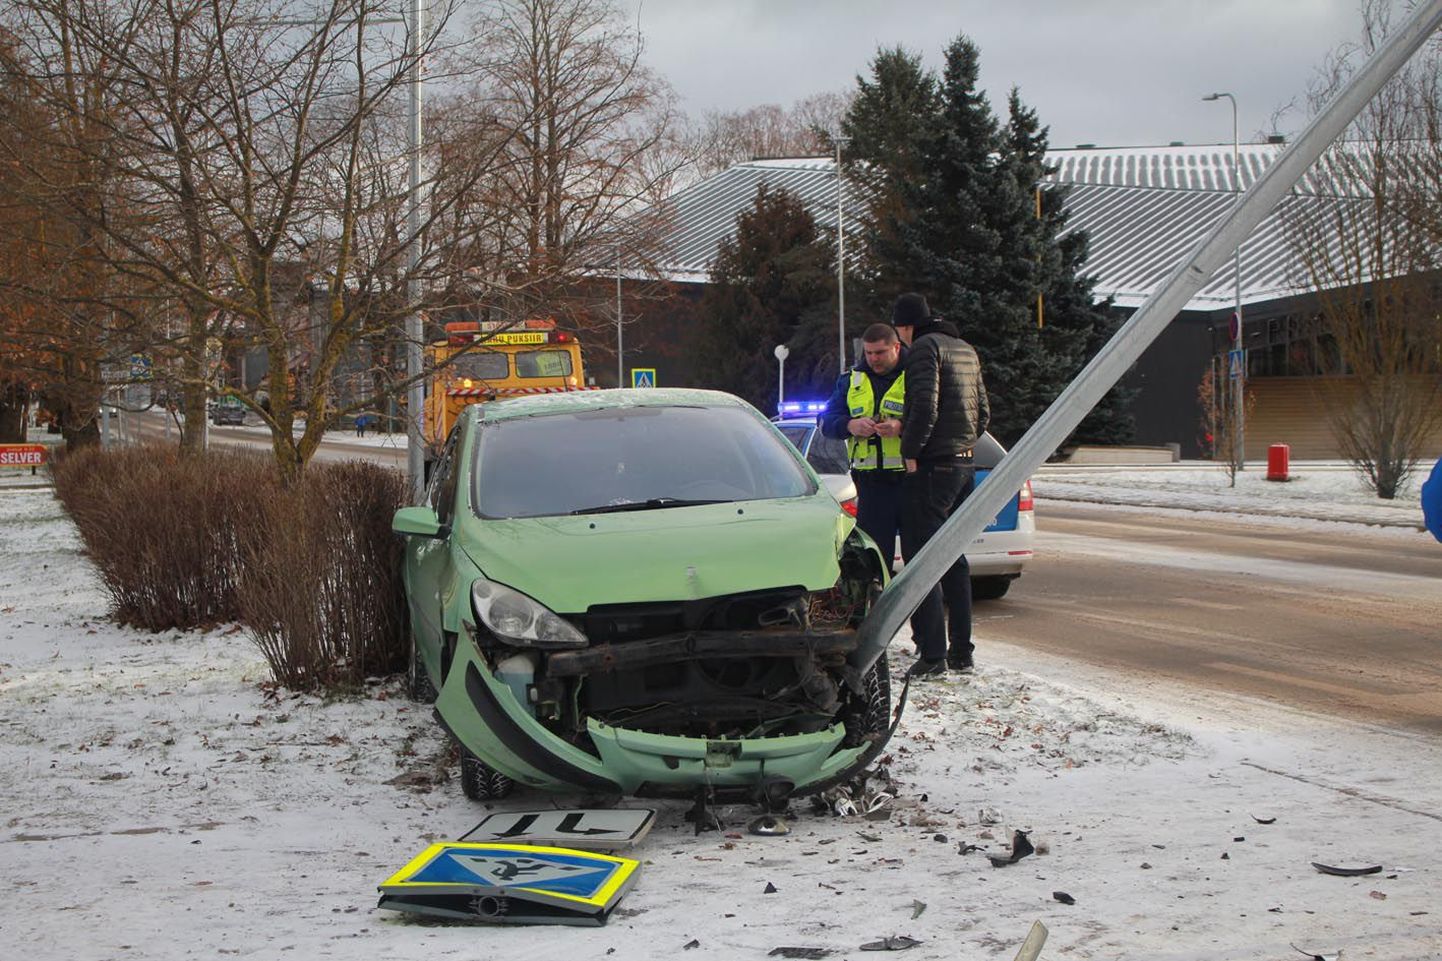 Pildil näha olev plekimõlkimine on üks sellistest, mida Järvamaa teedel-tänavatel ikka ette tuleb. Hukkunutega liiklusõnnetusi pole maakonnas kahel viimasel aastal juhtunud.